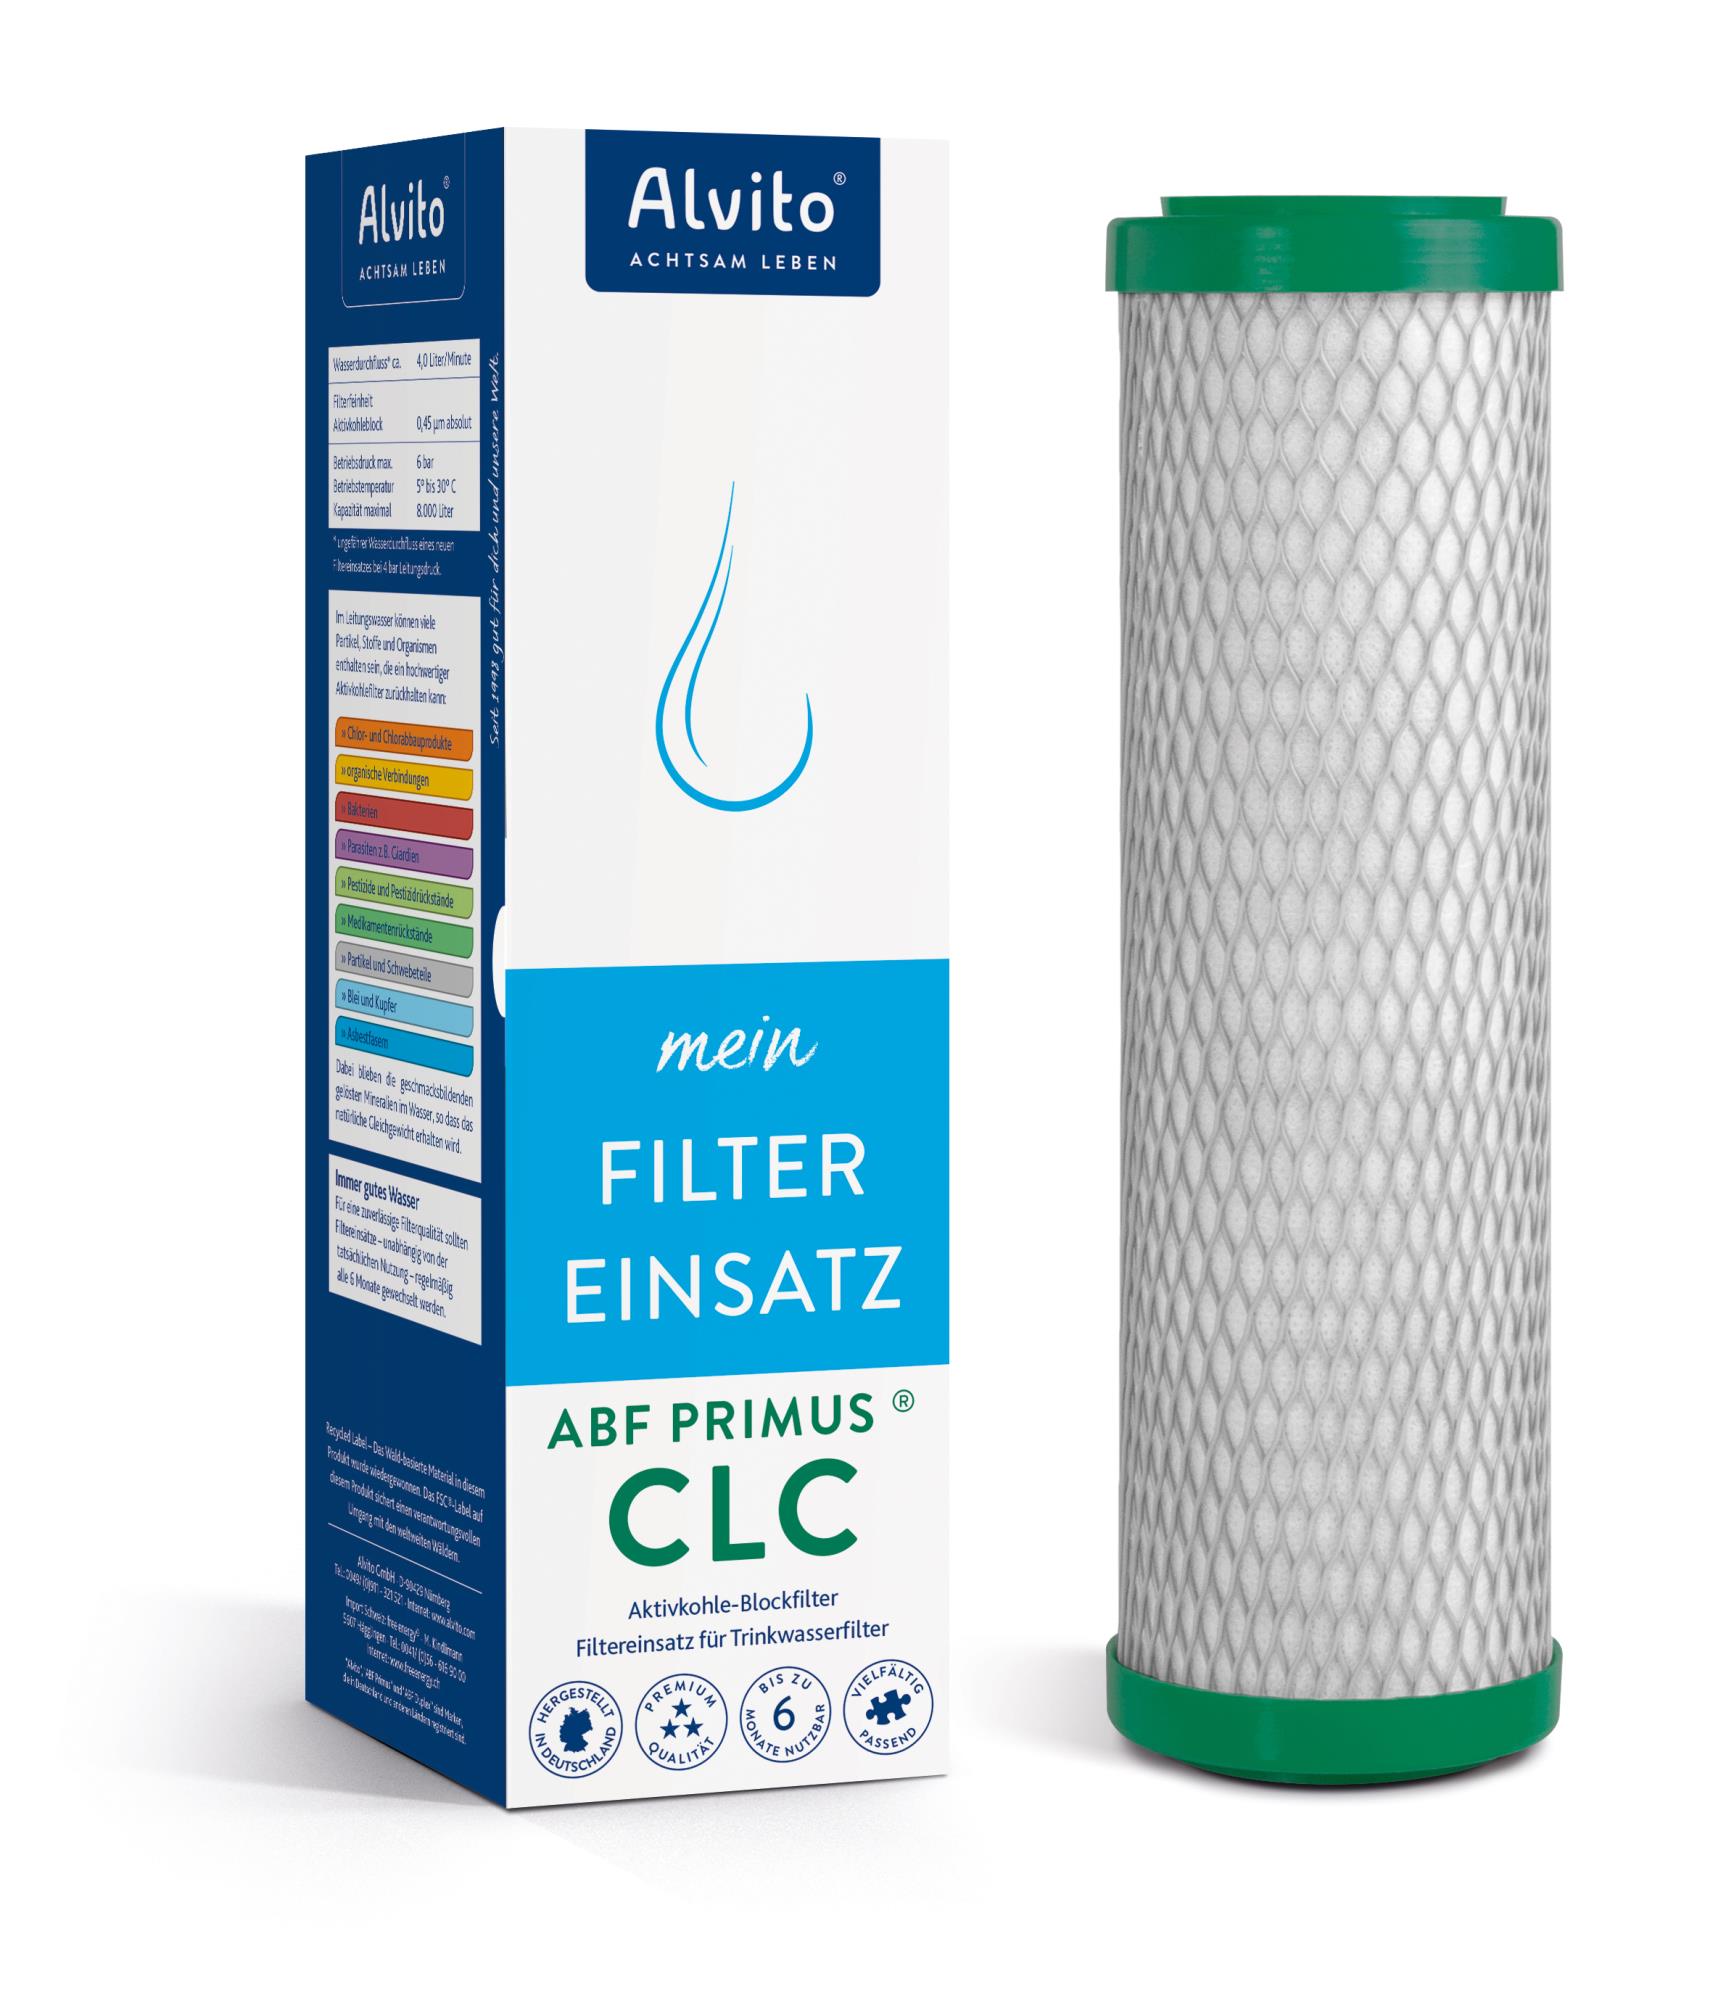 Alvito Filtereinsatz ABF Primus CLC